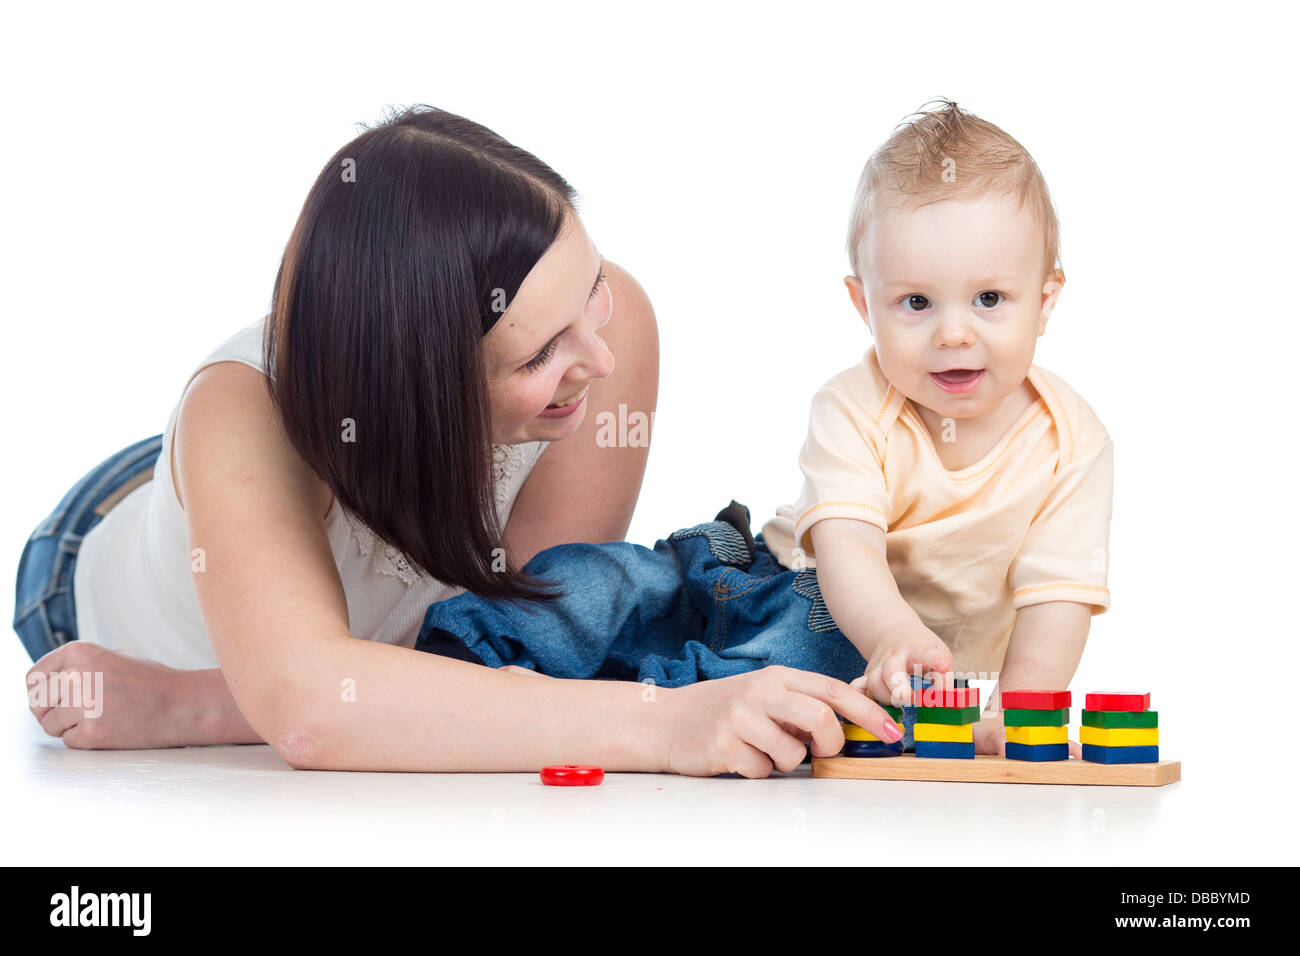 La madre y el bebé juegue con juguetes de madera Foto de stock